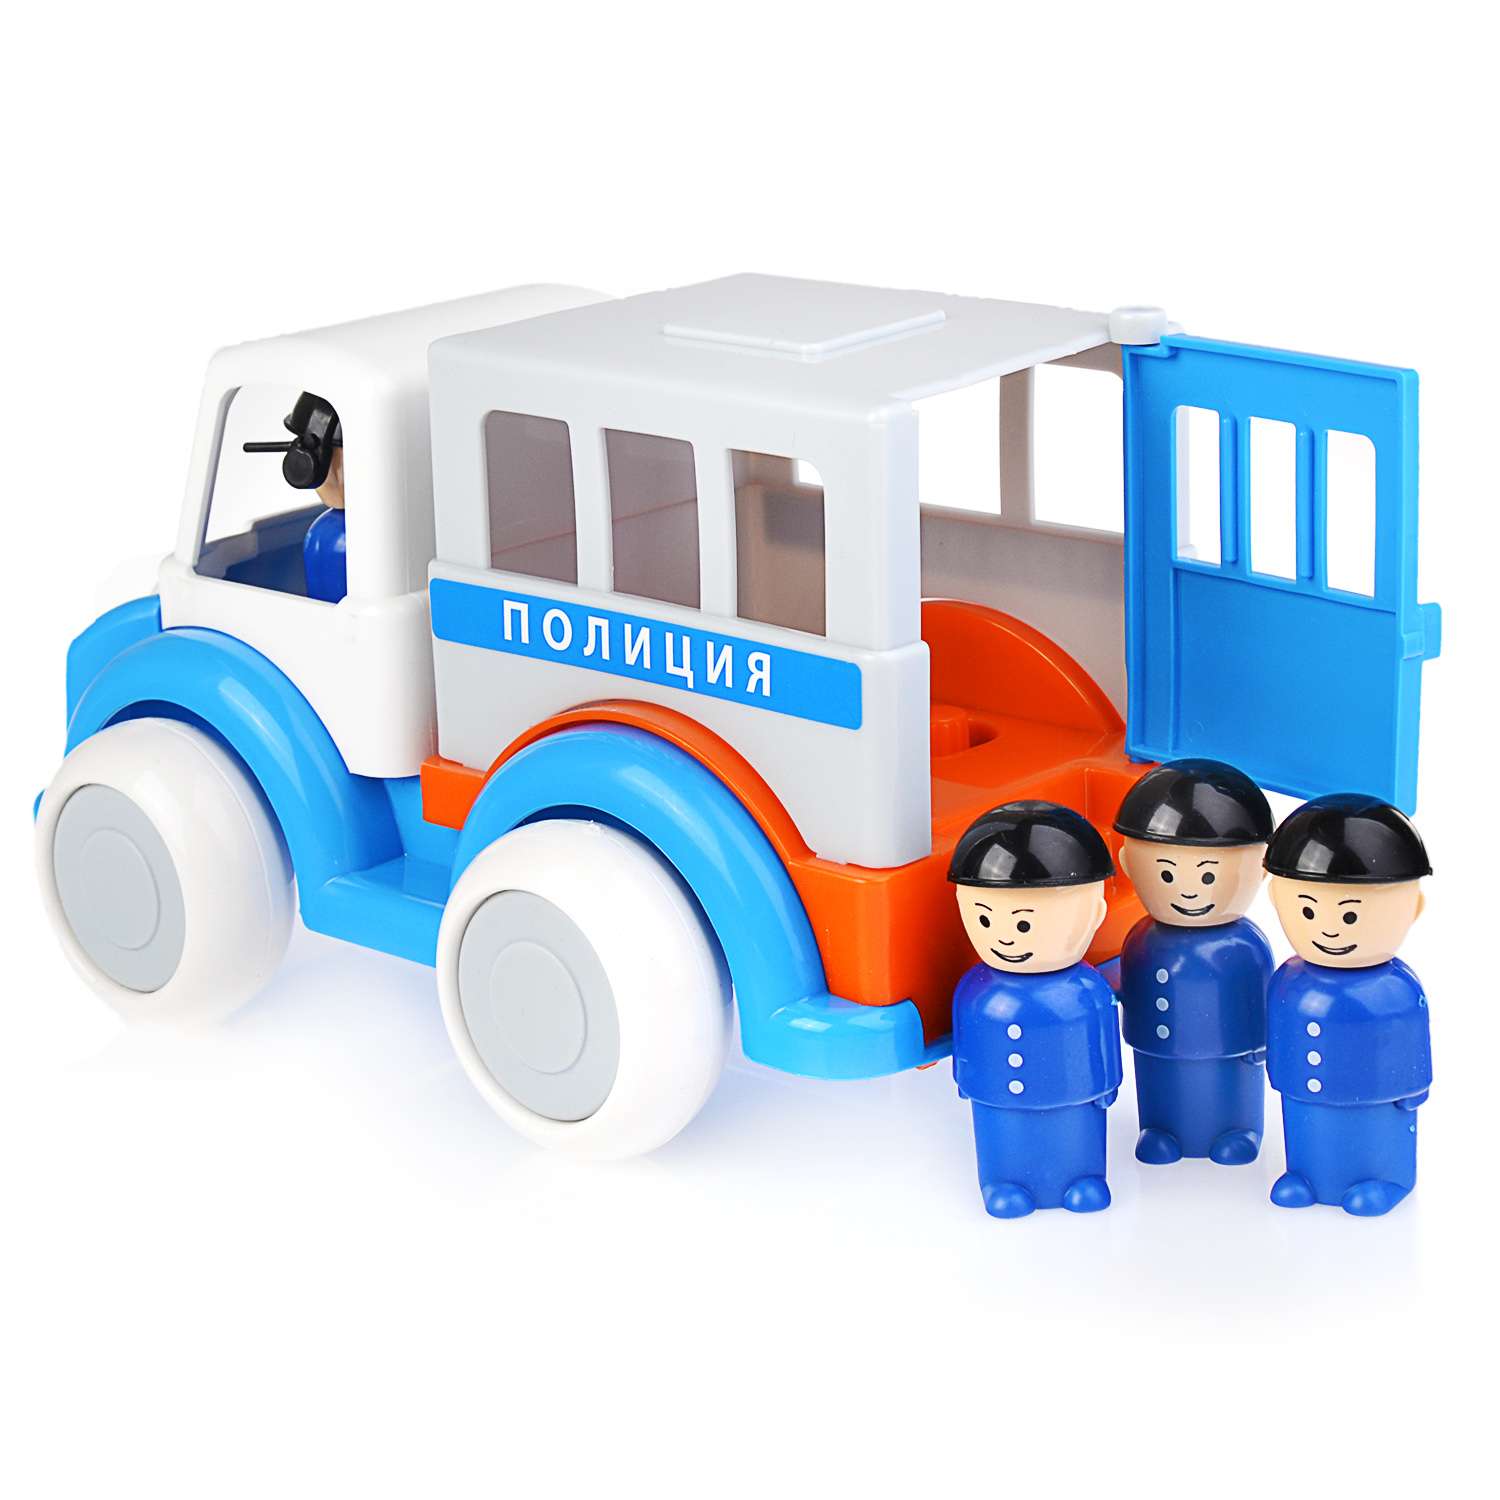 Полицейская машинка Форма С фигурками полицейских Бесшумные колеса 01134126 - фото 2